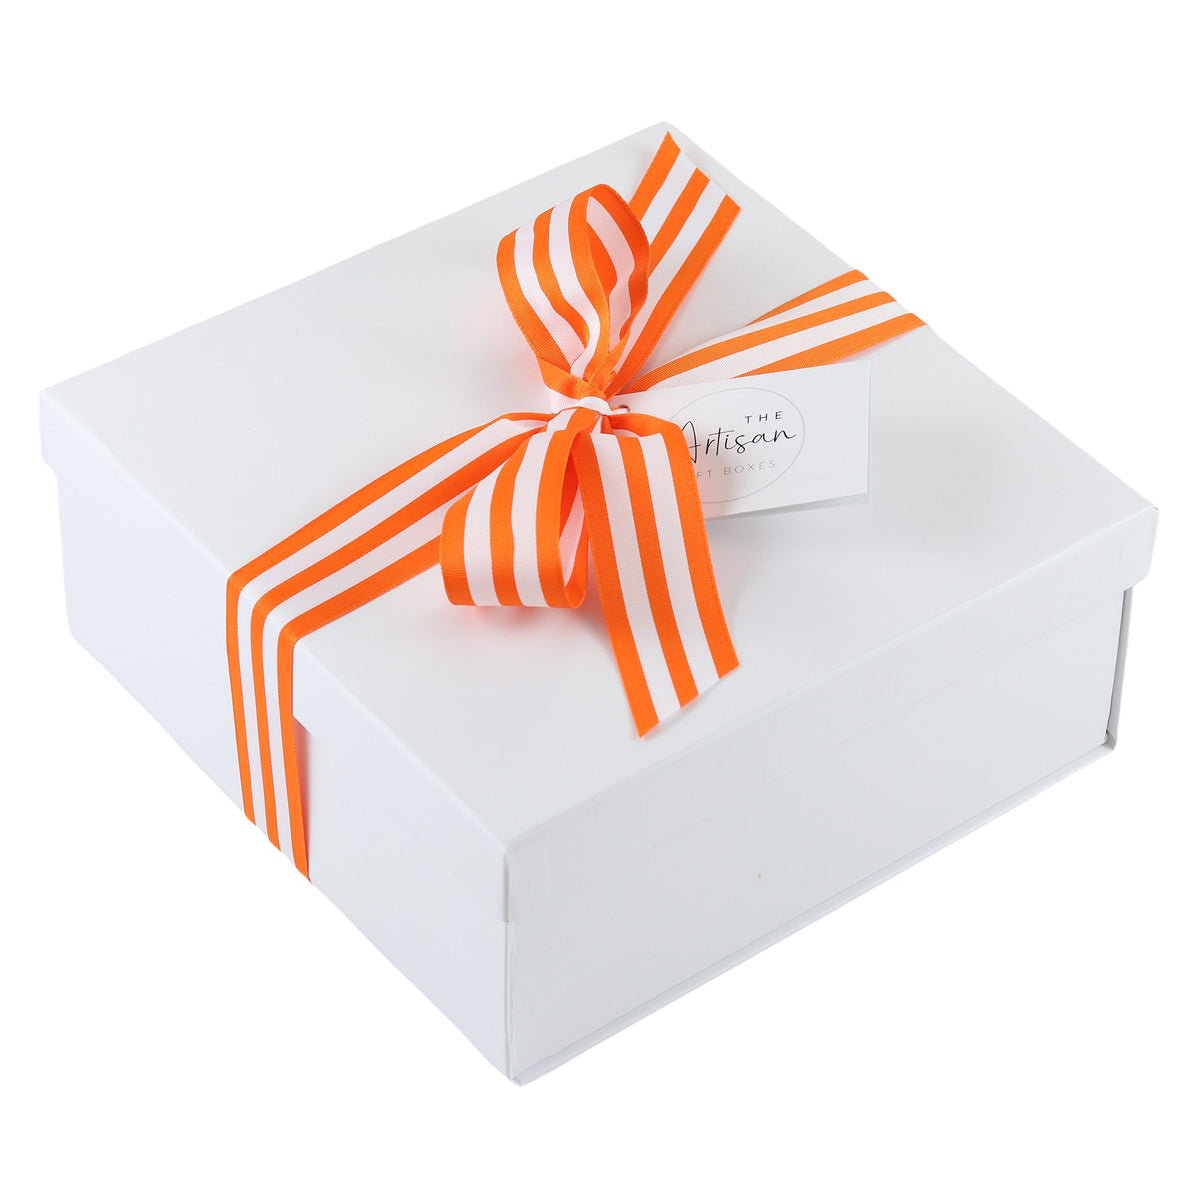 Austin Treats | Texas Gift Basket Texas Gift Baskets The Artisan Gift Boxes 